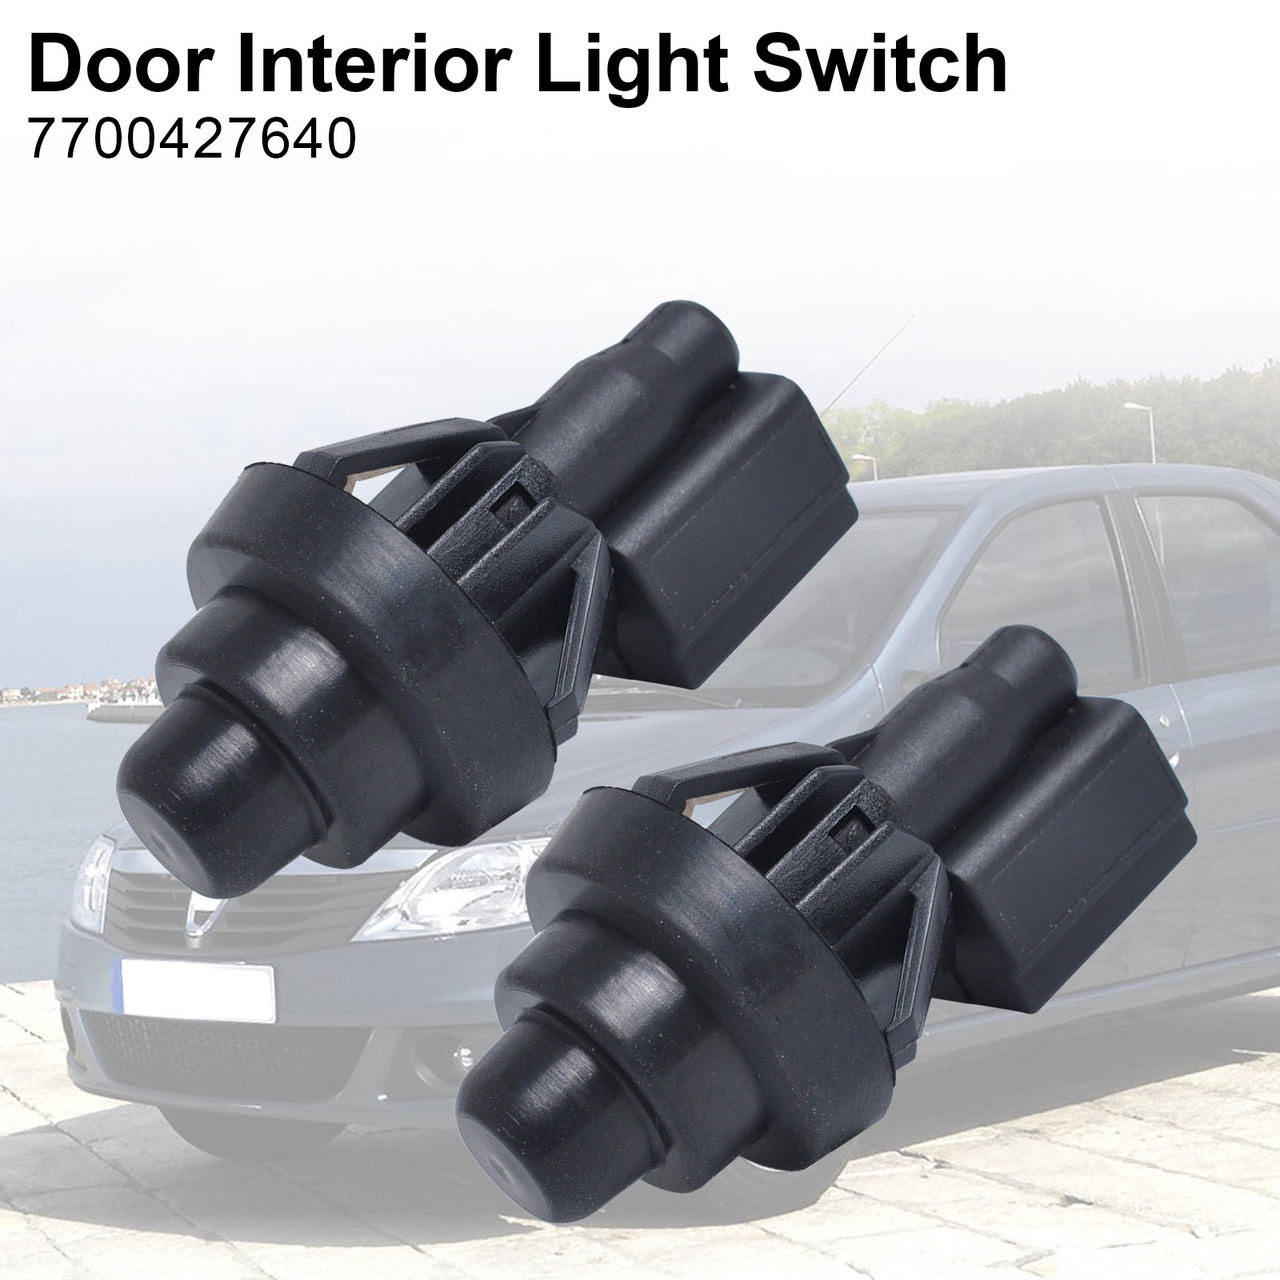 2X Door Interior Light Switch Fit for Dacia Logan 04-12 Sandero 08-12 Renault Clio MK2 98-05 Scenic 99-03 Black